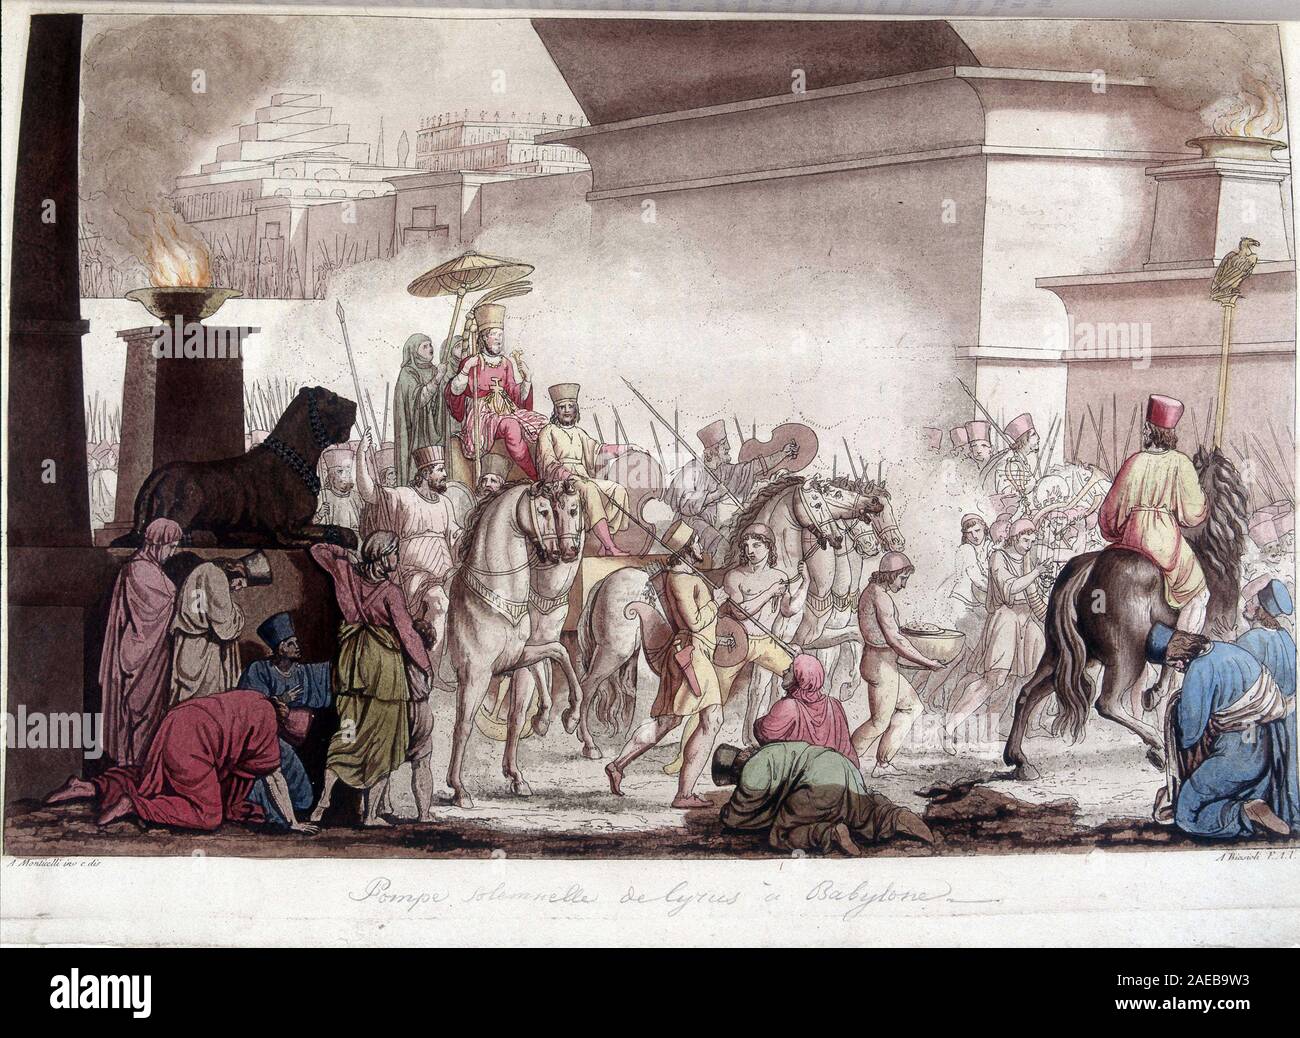 Entree du roi Cyrus II le Grand (580 av. JC - 530 av. JC) en grande pompe dans Babylone - in 'Le costume ancien et moderne' par Ferrario, ed. Milan, 1 Stock Photo